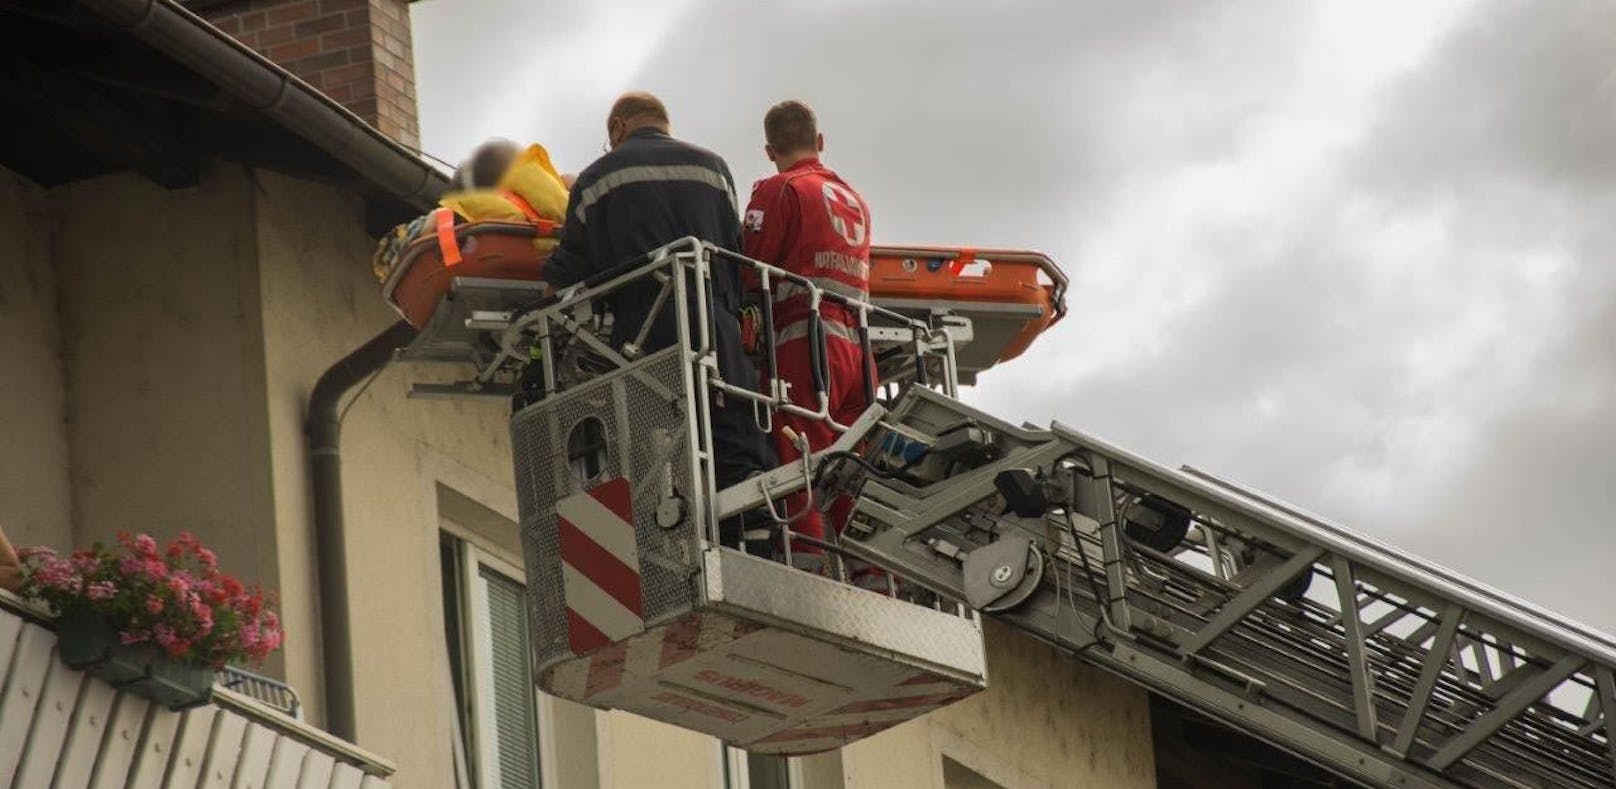 Florianis retten Frau mit Drehleiter vom Balkon